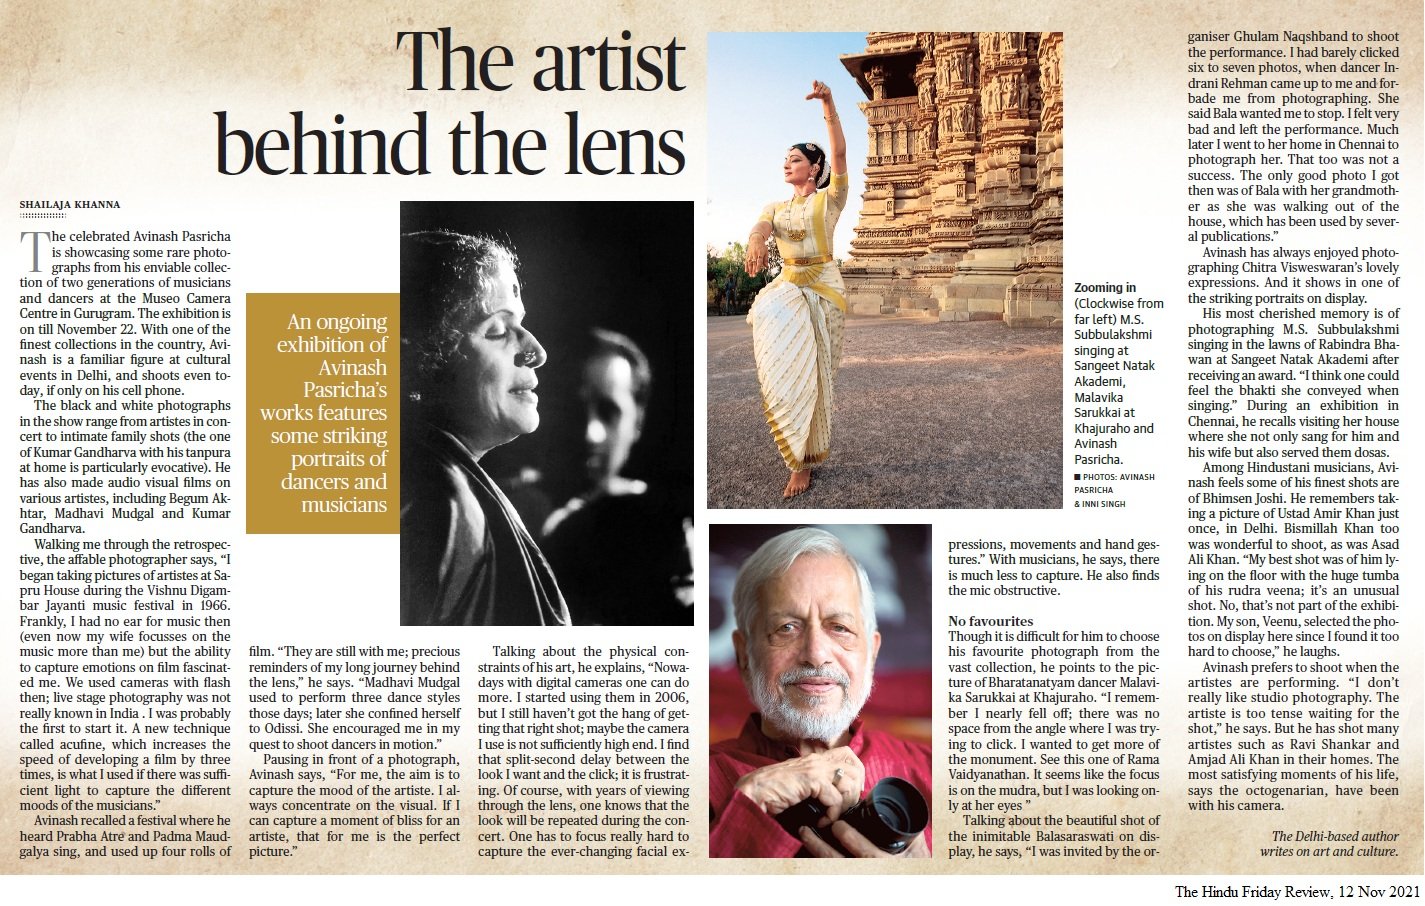 The artist behind the lens - Shailaja Khanna